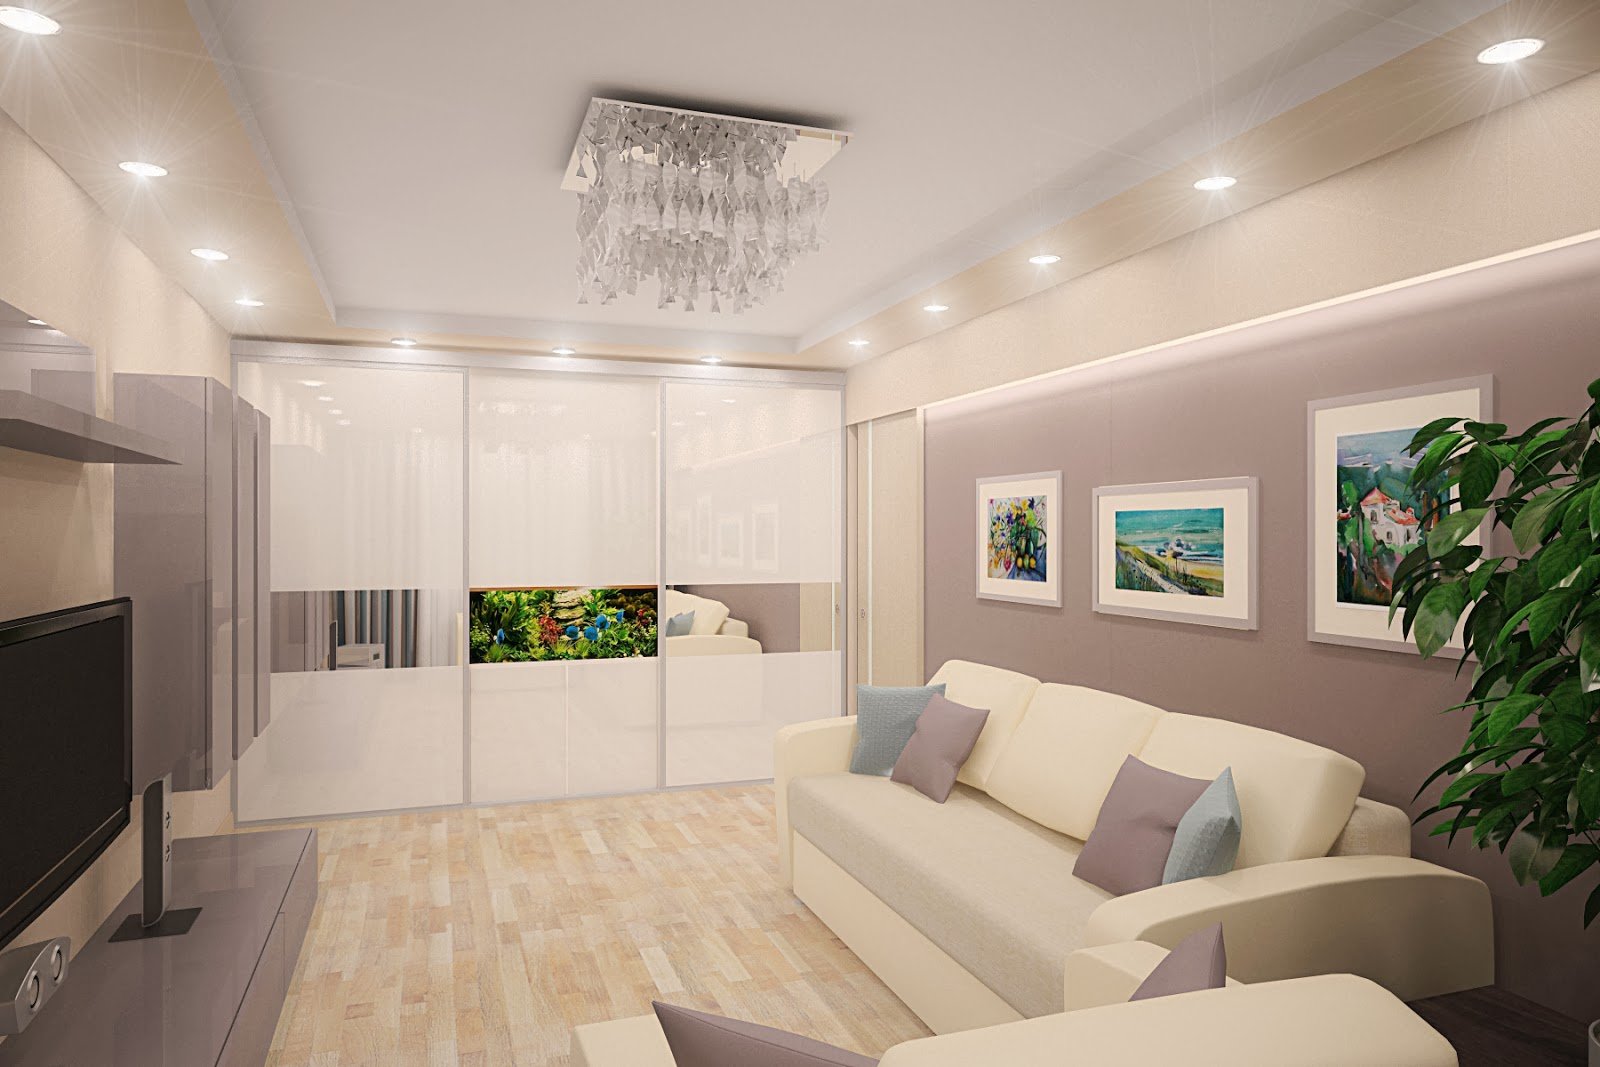 Оформление гостиной 24 кв. м.: создаем уютный дизайн с кухней или спальней